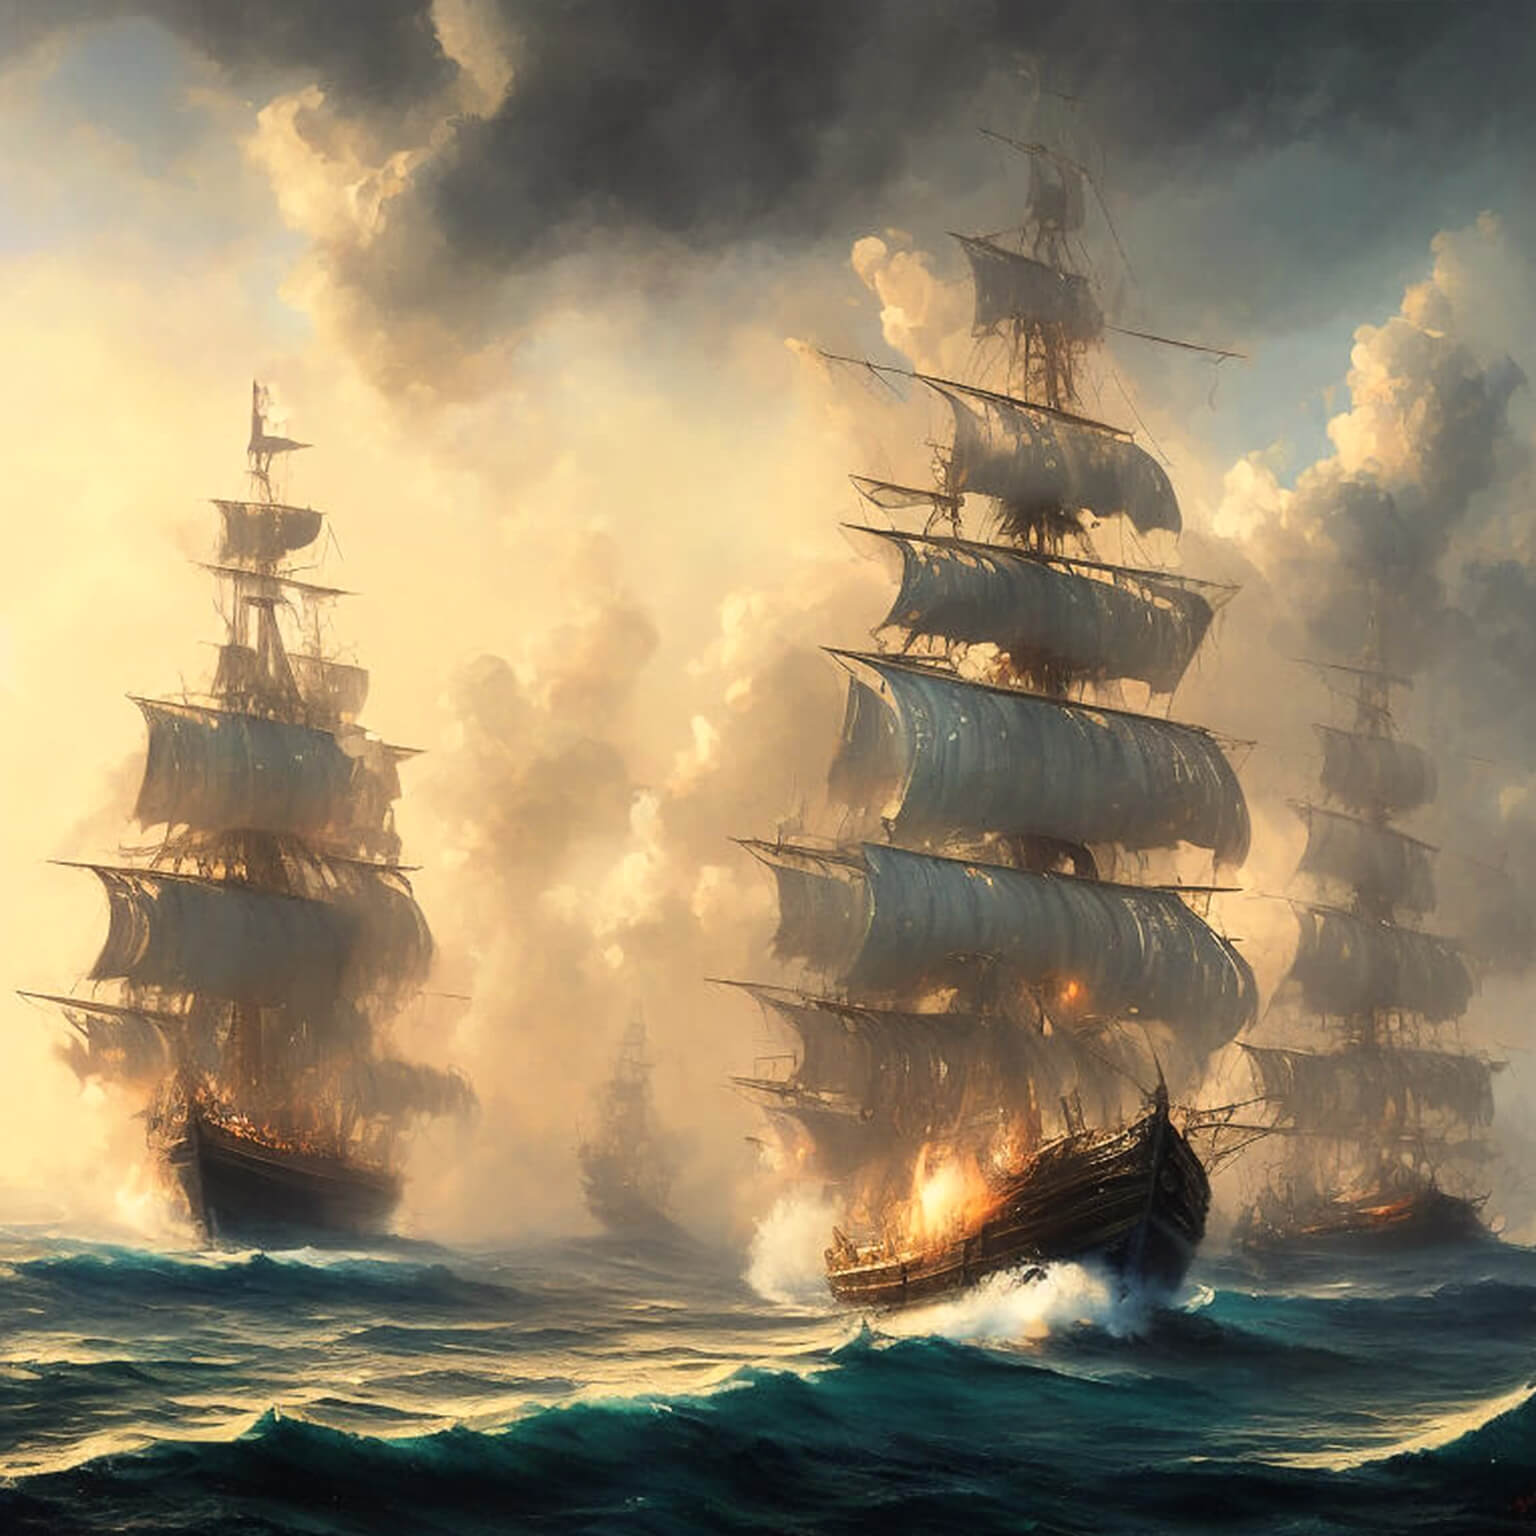 Ein KI Bild von einer Flotte von alten Segelschiffen die in Brand geraten sind